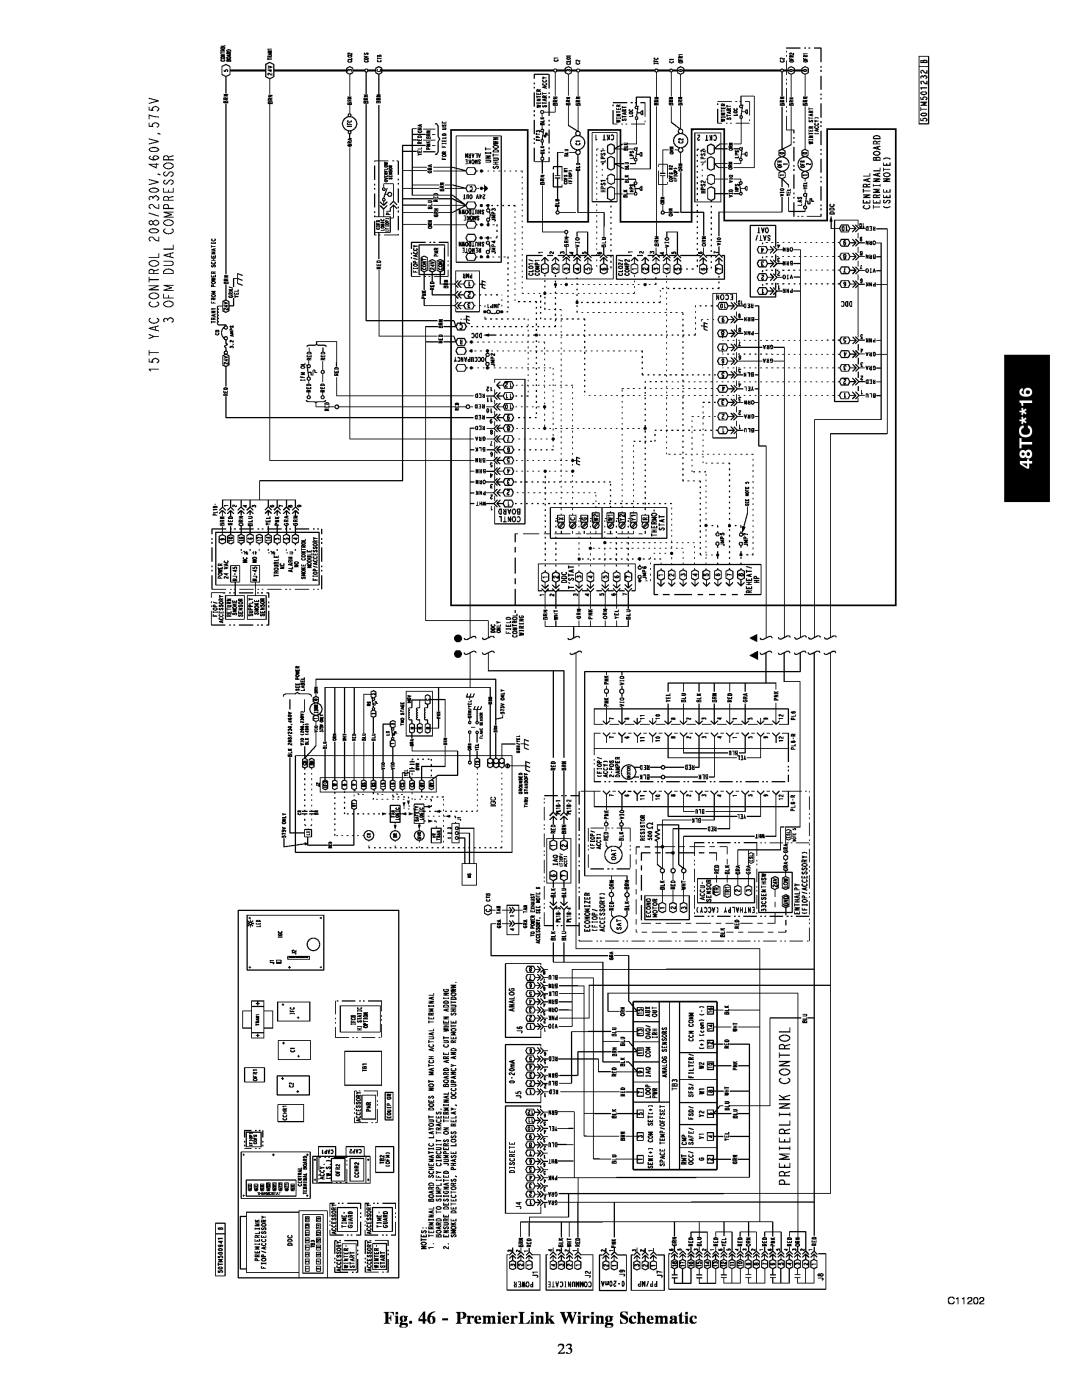 Carrier 48TC**16 installation instructions PremierLink Wiring Schematic, C11202 